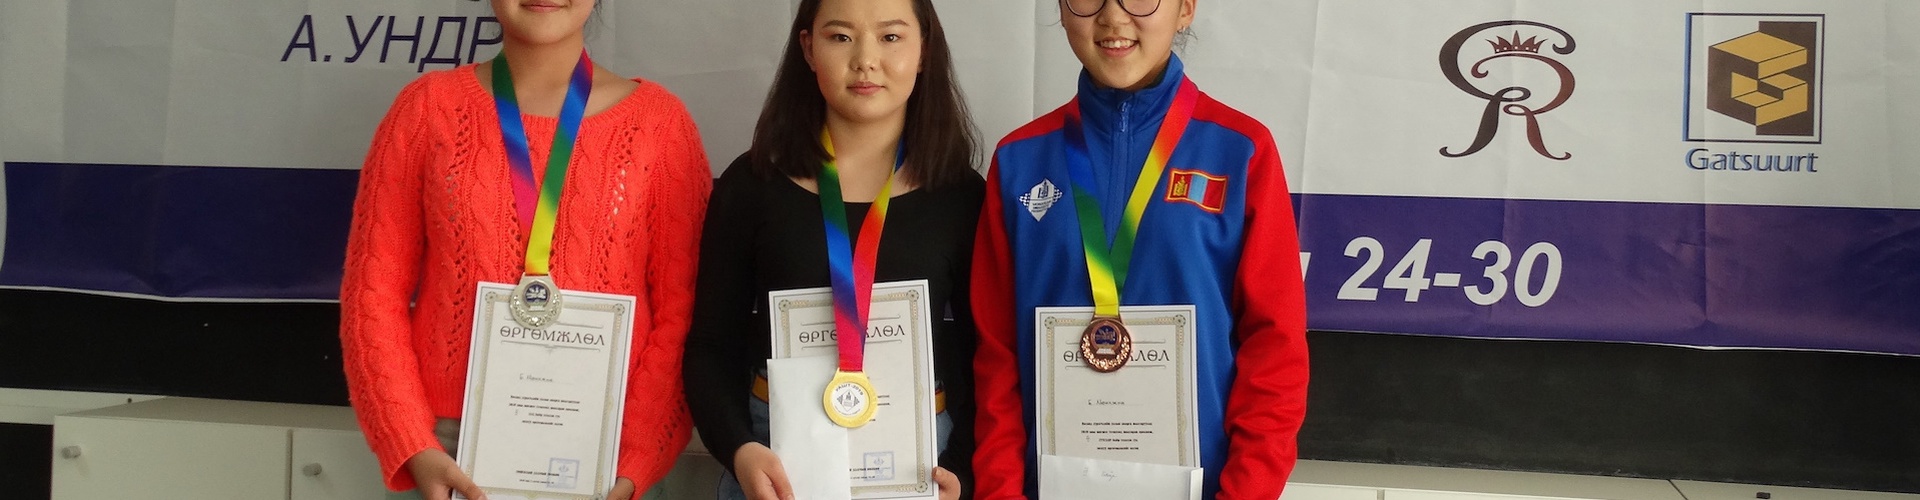 Монгол Улсын аварга шалгаруулах 31 дэх удаагийн тэмцээн. Эмэгтэй